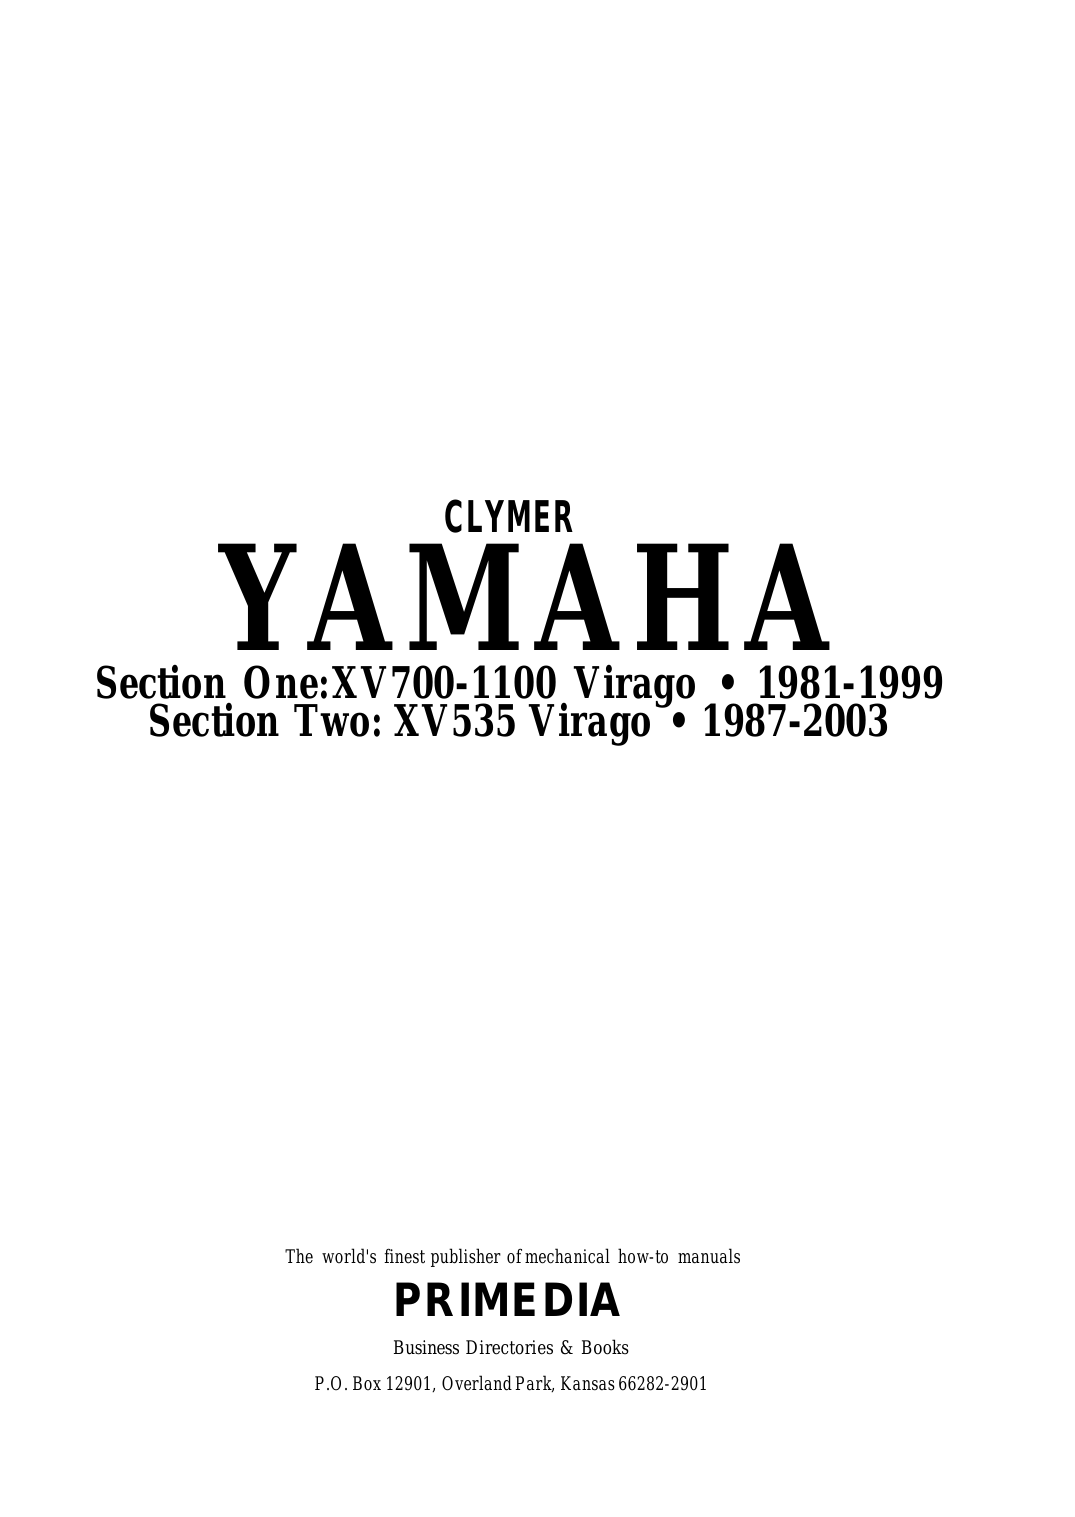 1981-2003 Yamaha XV1000 Virago service manual Preview image 2